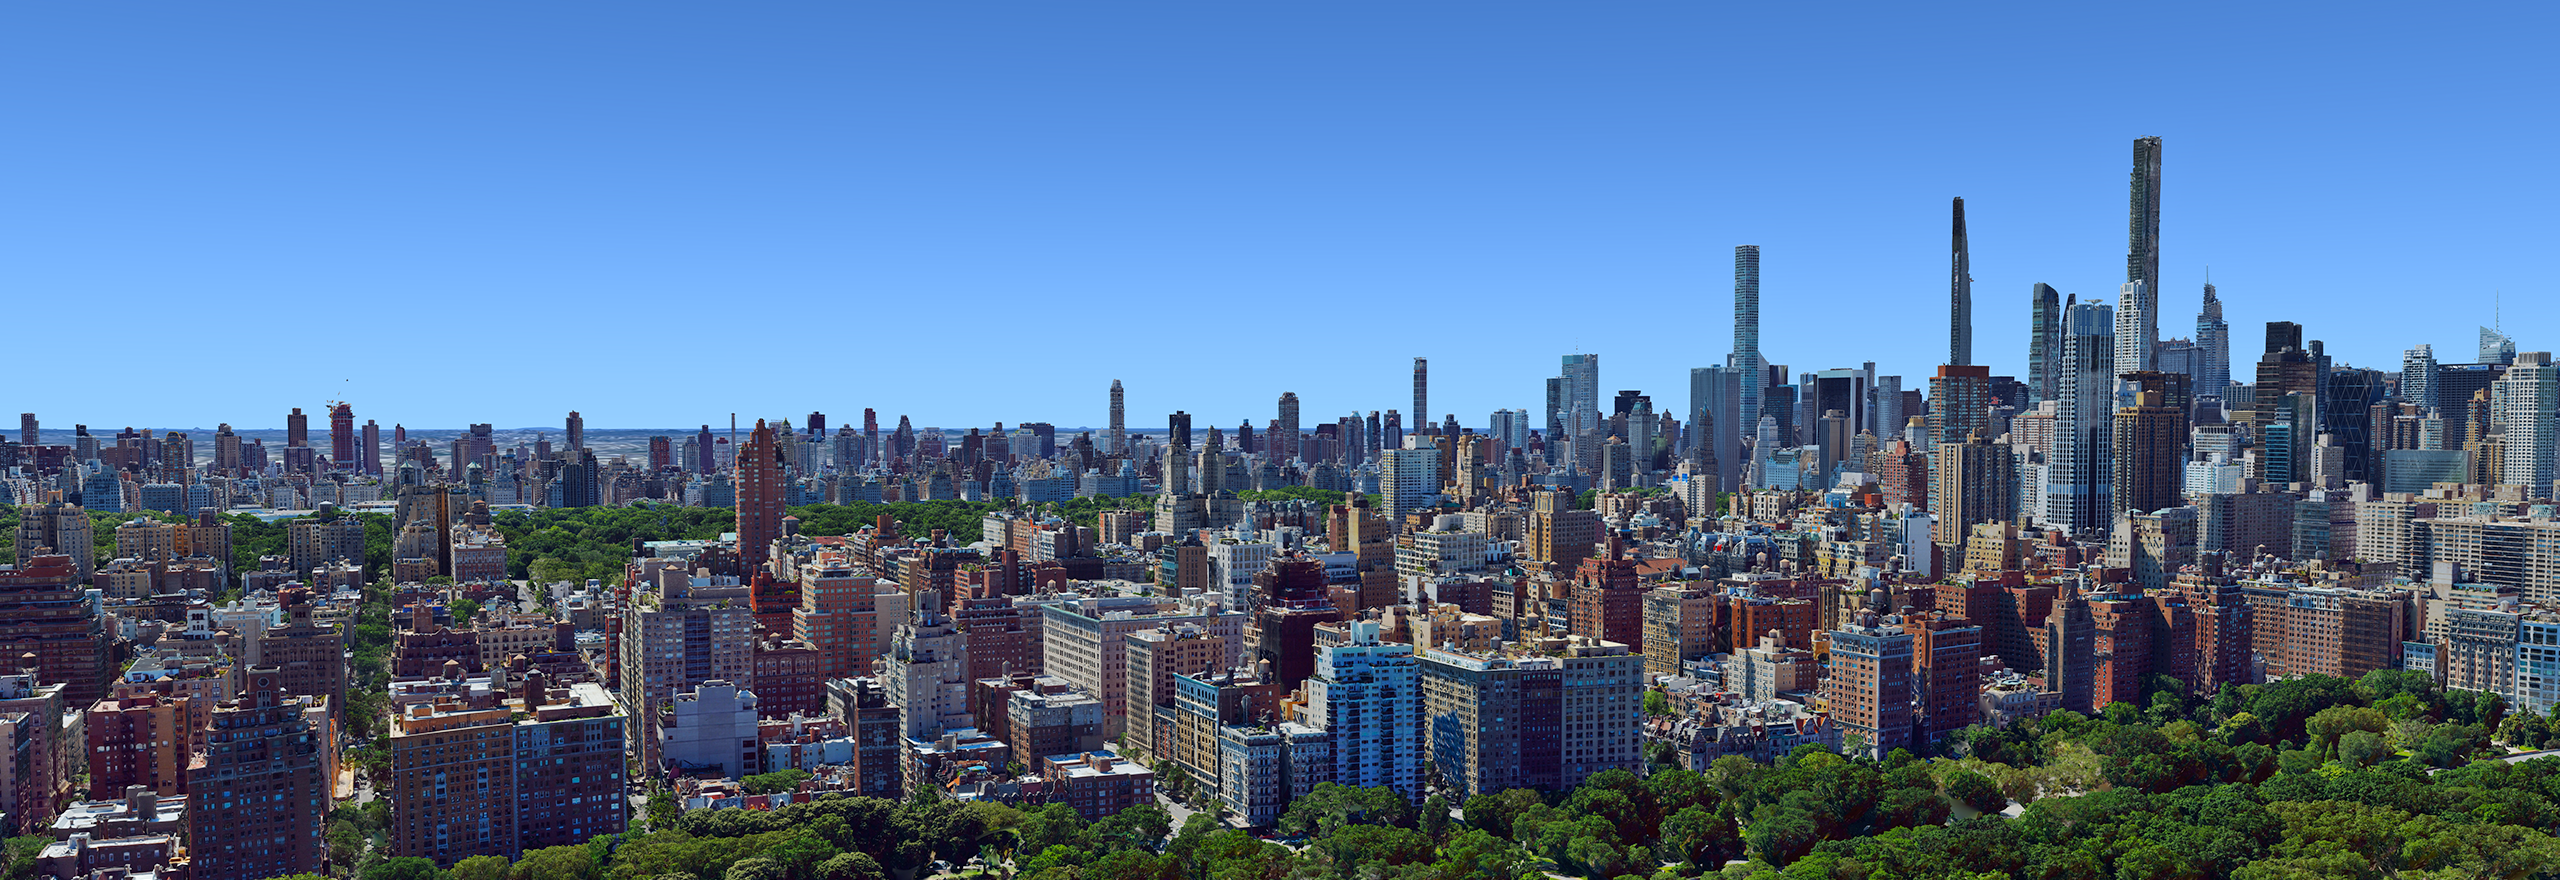 Modelo 3D de malla aérea de la ciudad de Nueva York